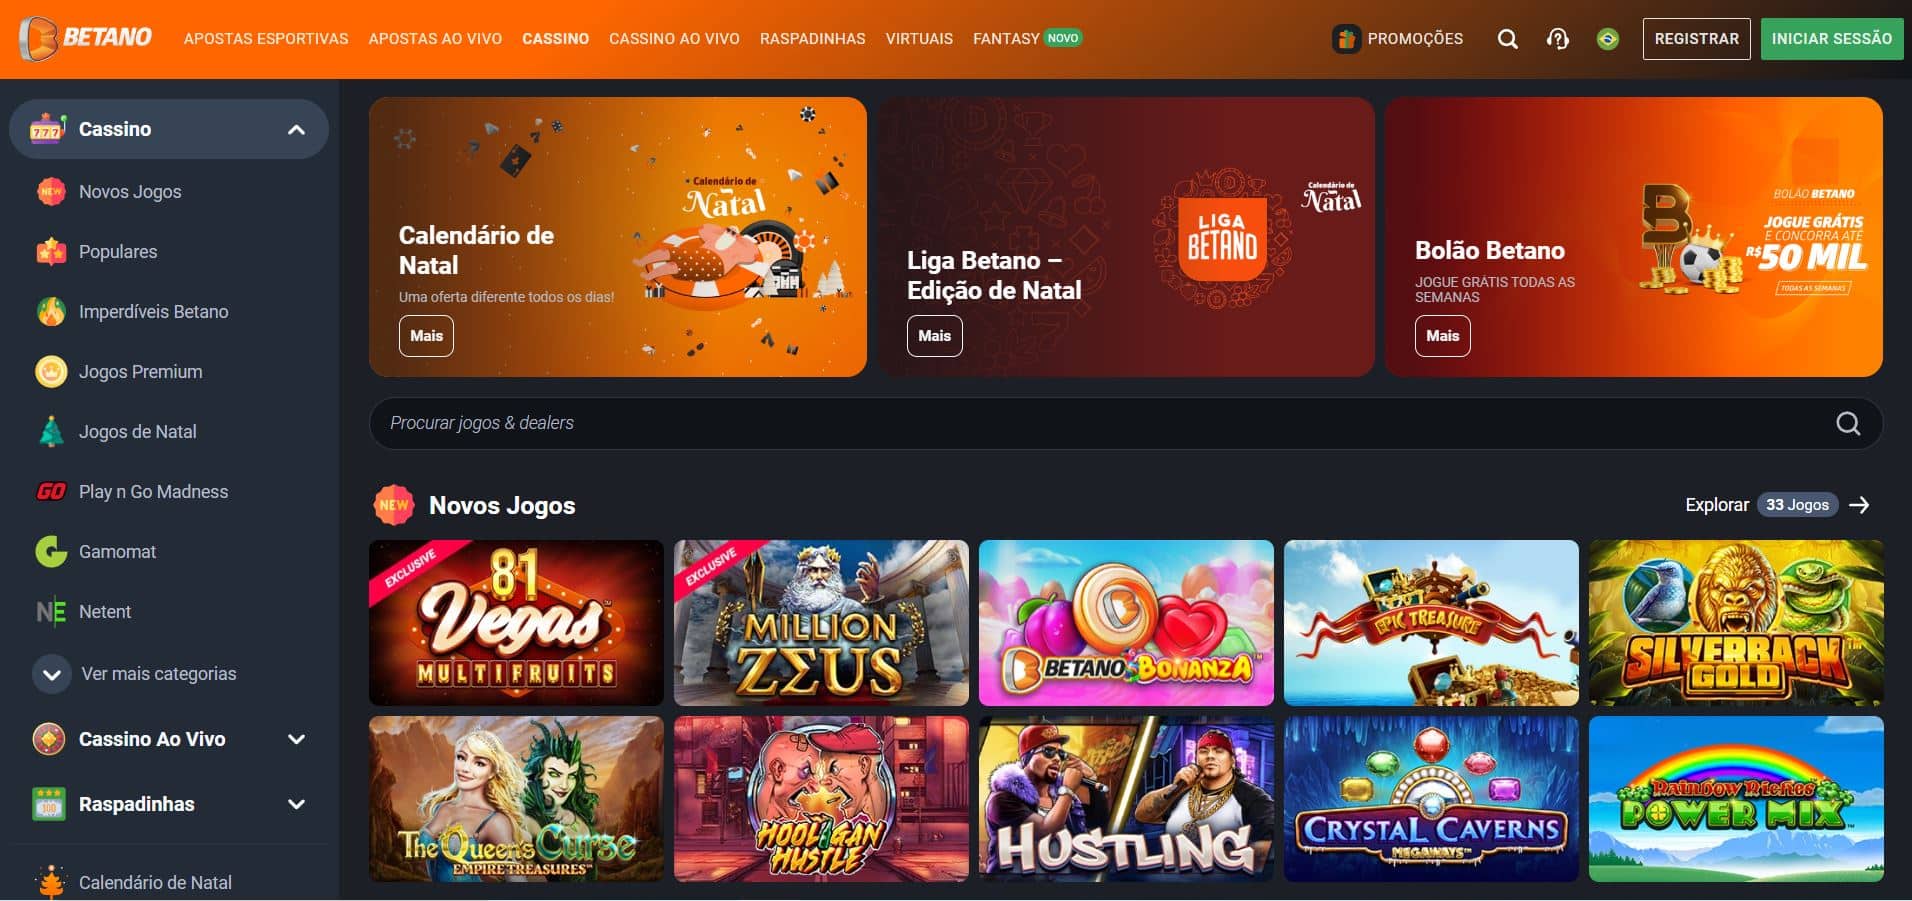 Betano casino - homepage